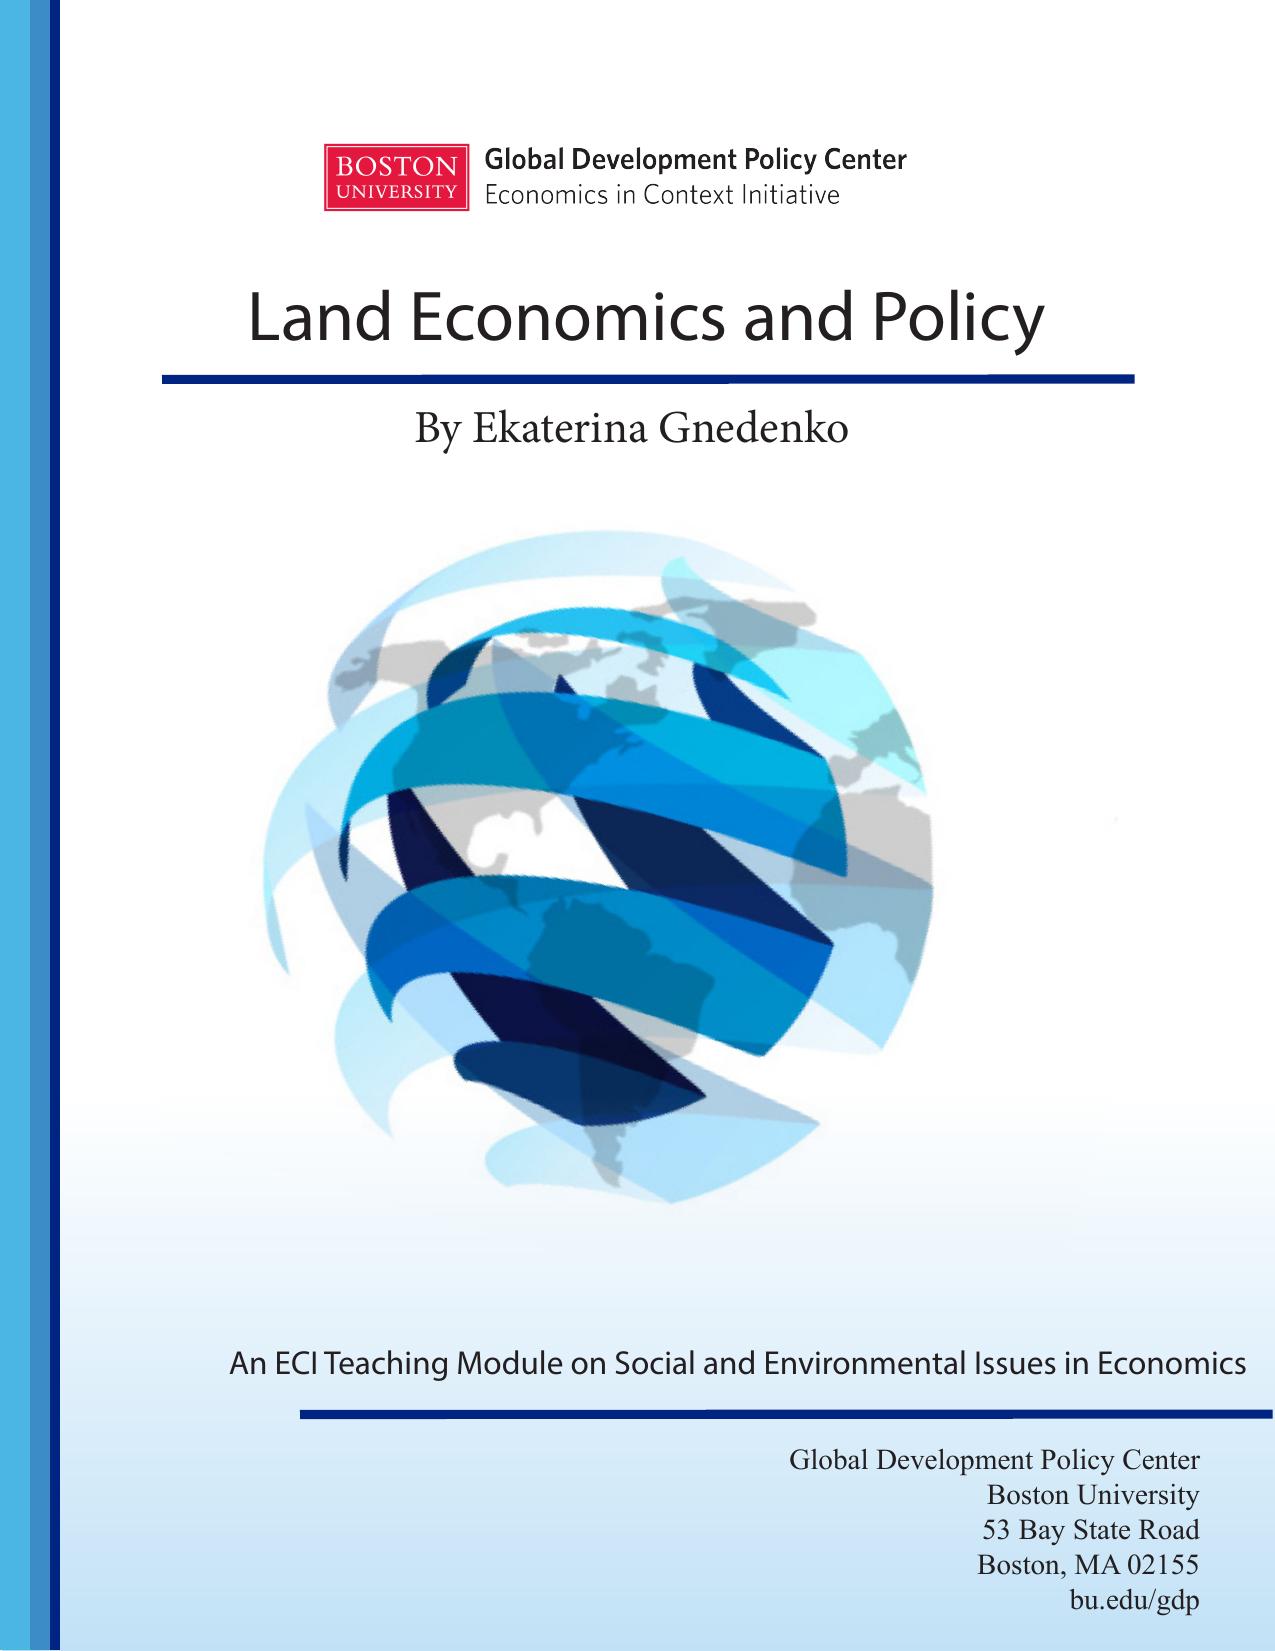 Land-Economics 2020